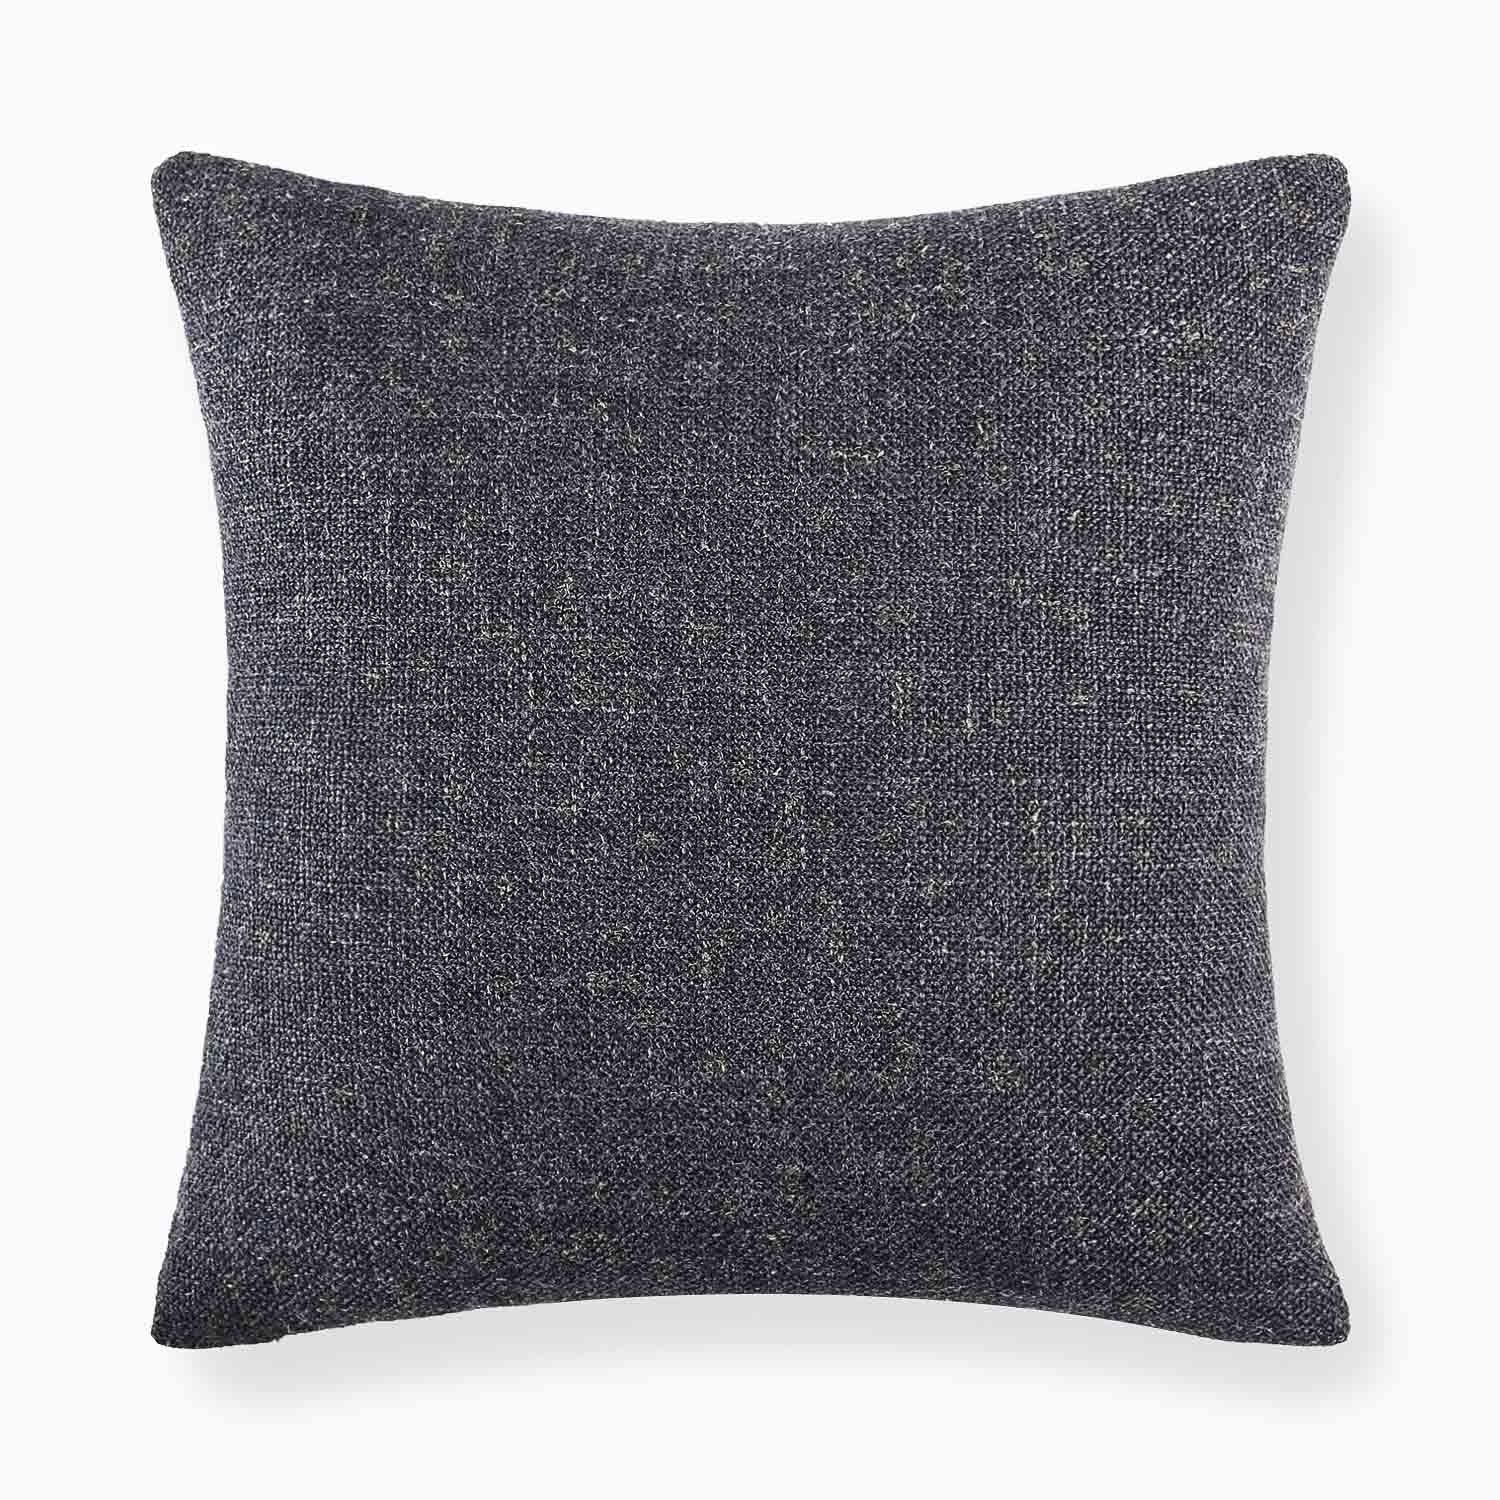 Savona Textured Linen Pillow Cover-linen decorative pillow